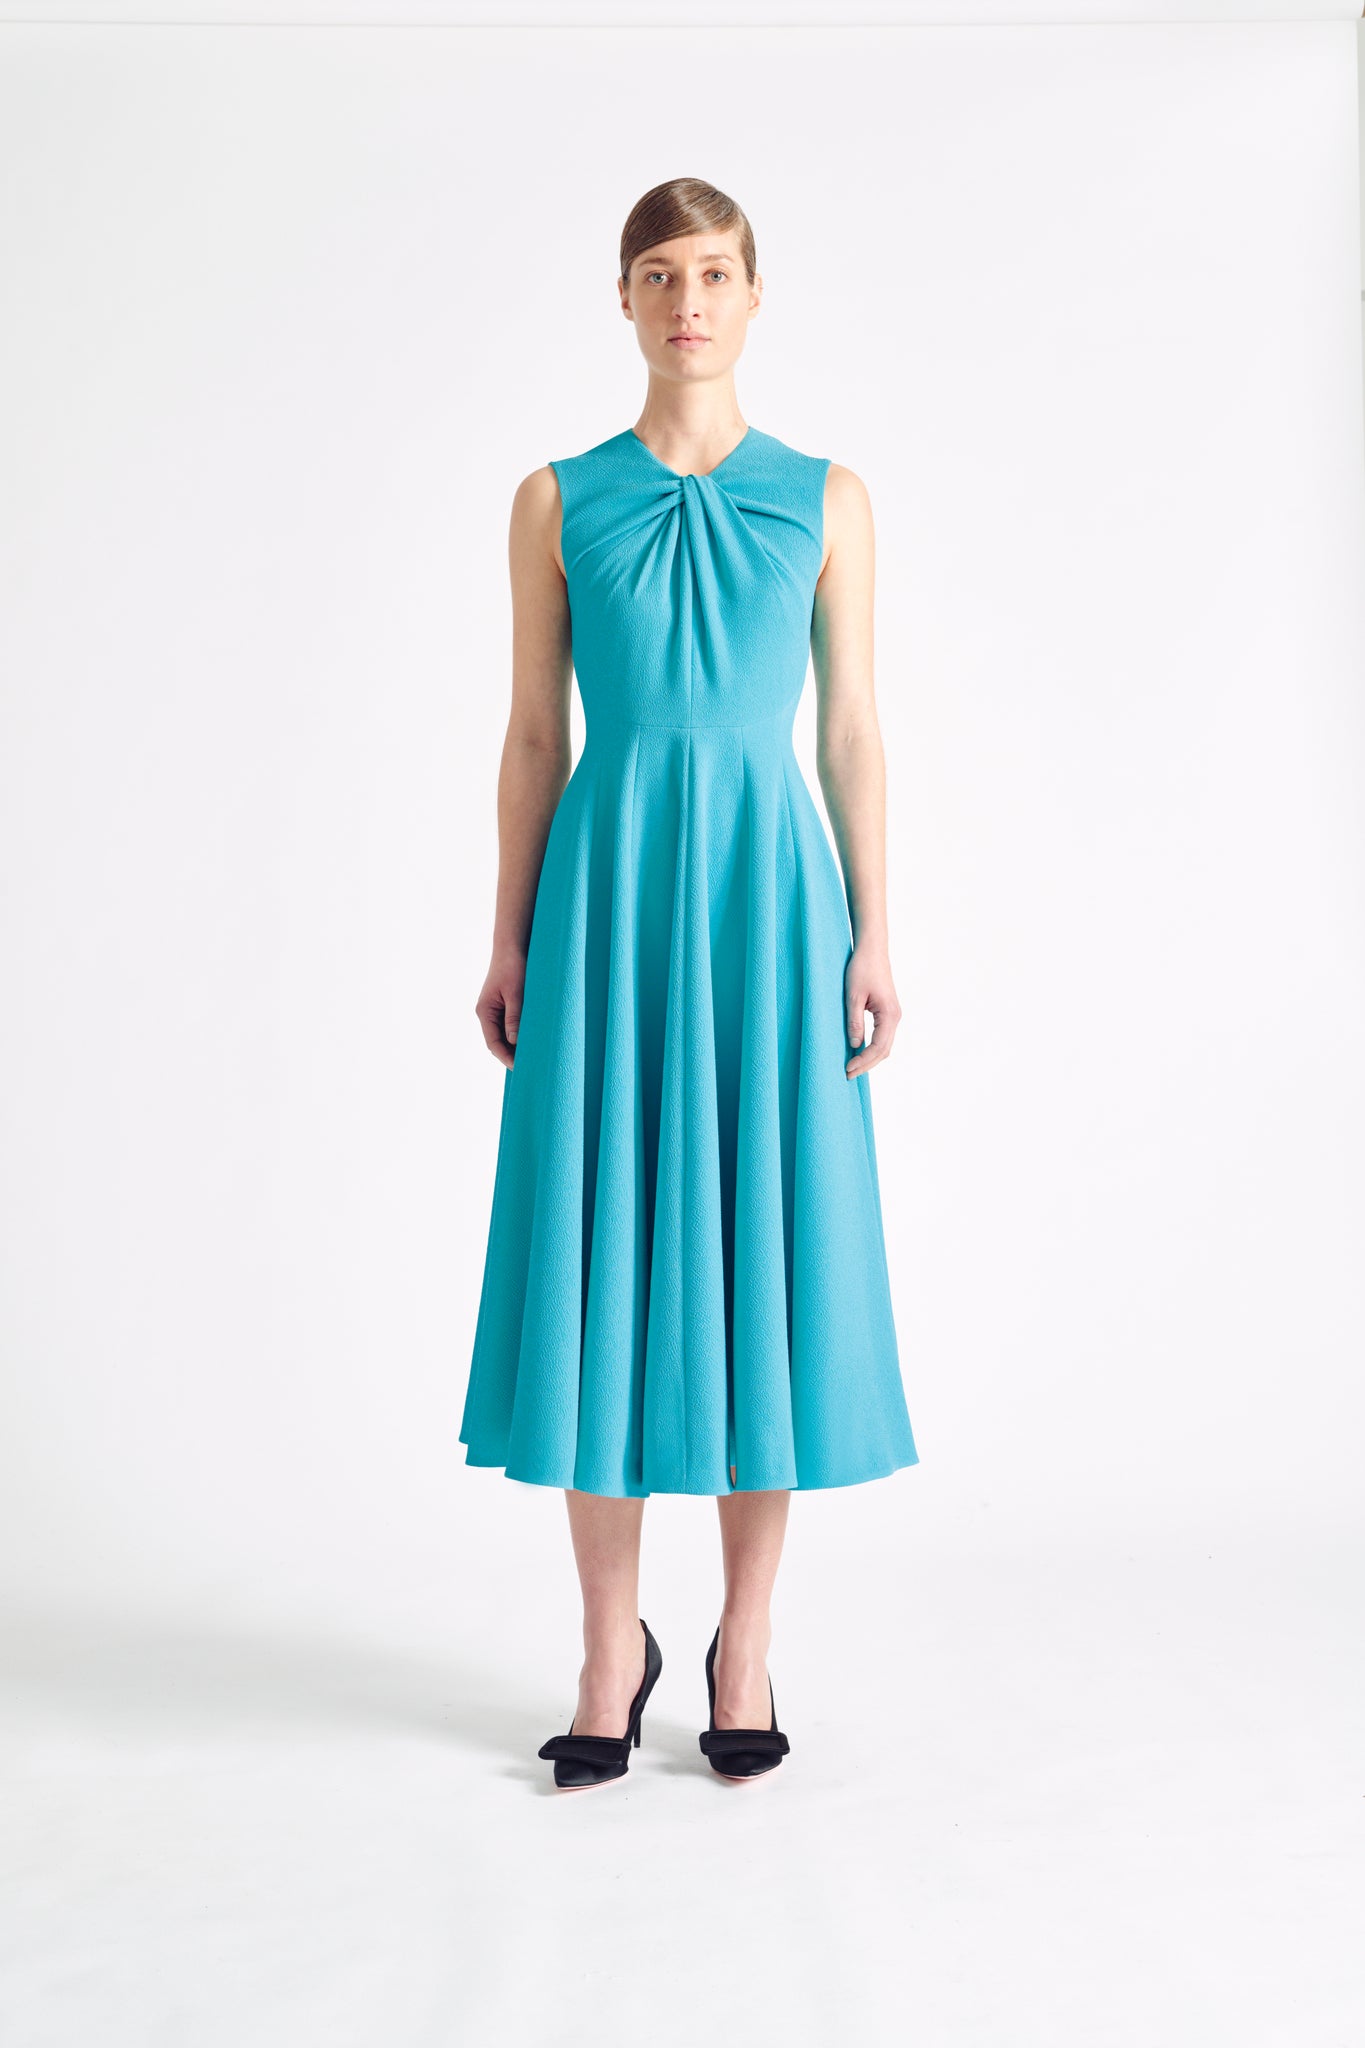 Emilia Wickstead | Official Online Store | Luxury Designer Womenswear